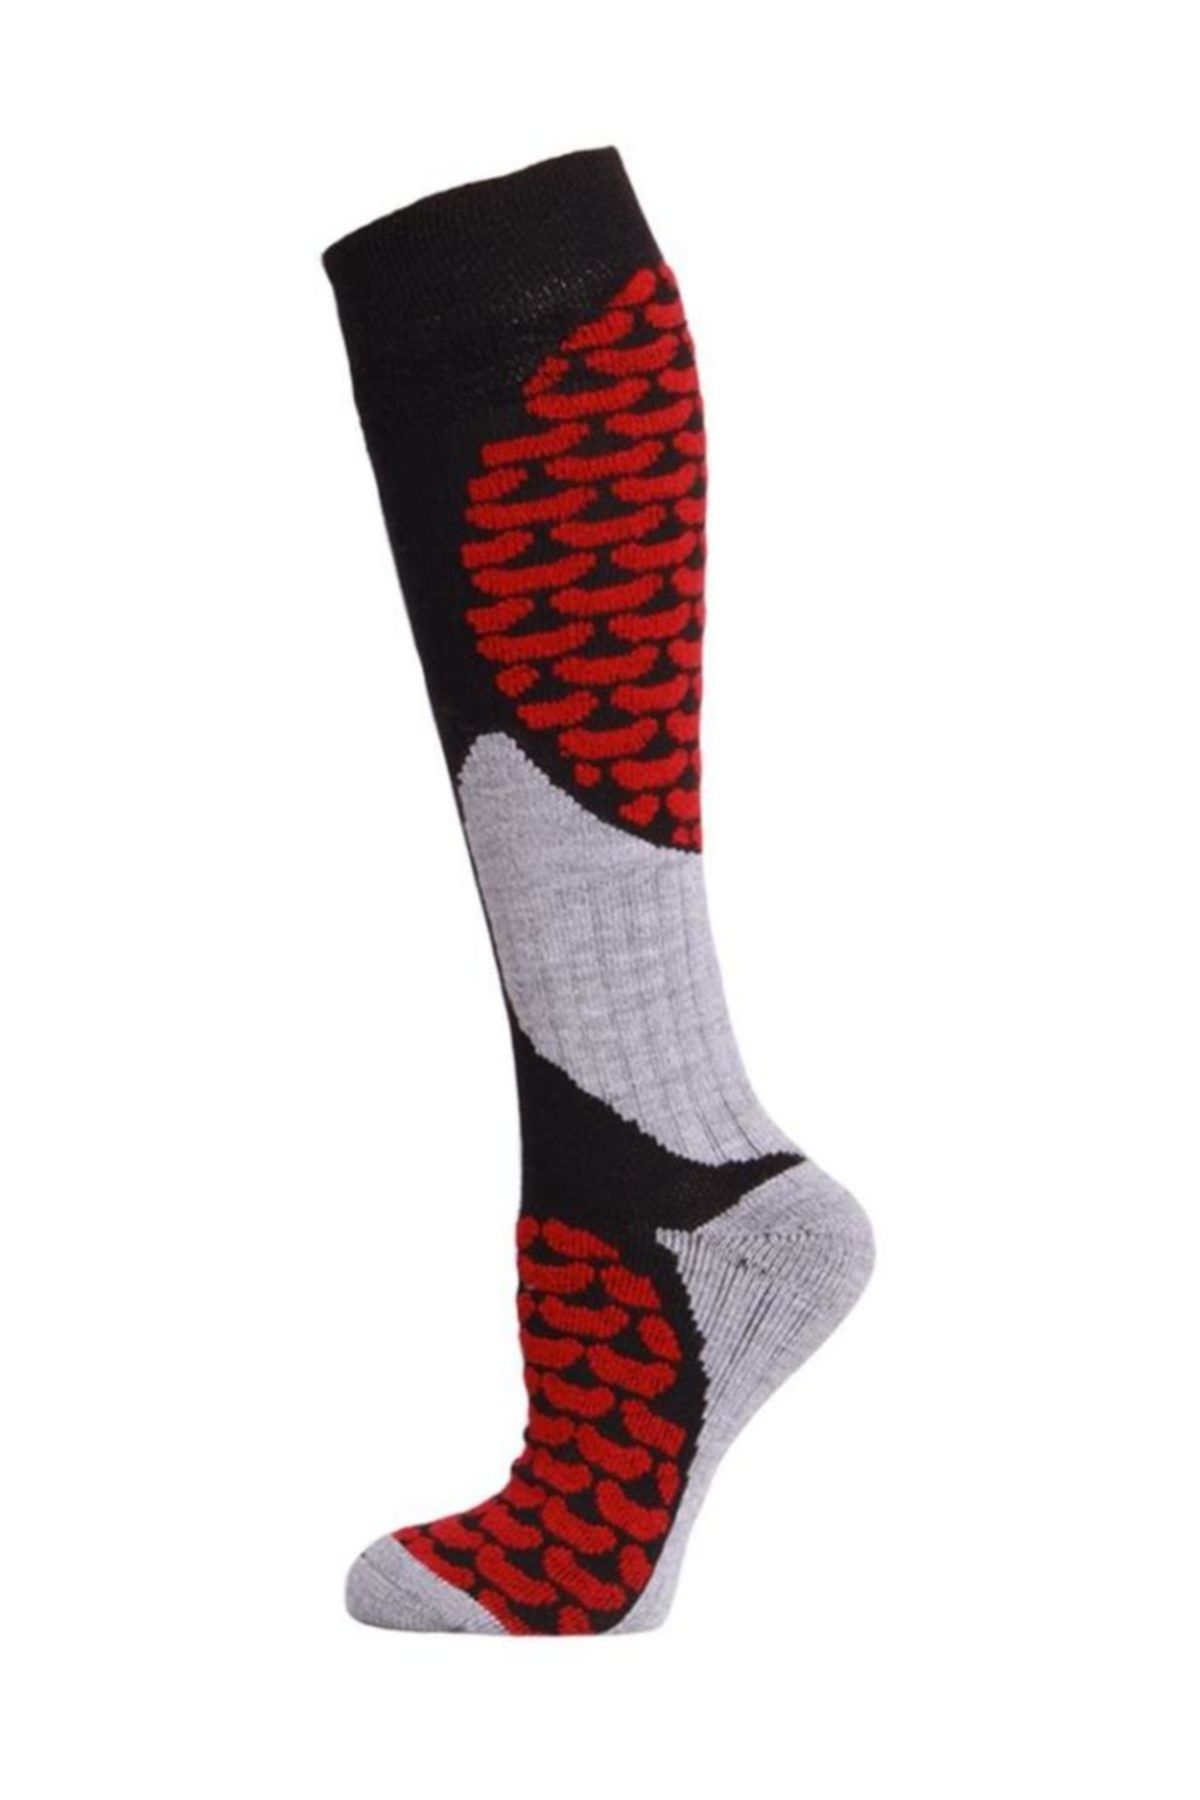 Panthzer Ski & Snowboard Erkek Kayak Çorabı Siyah/Kırmızı